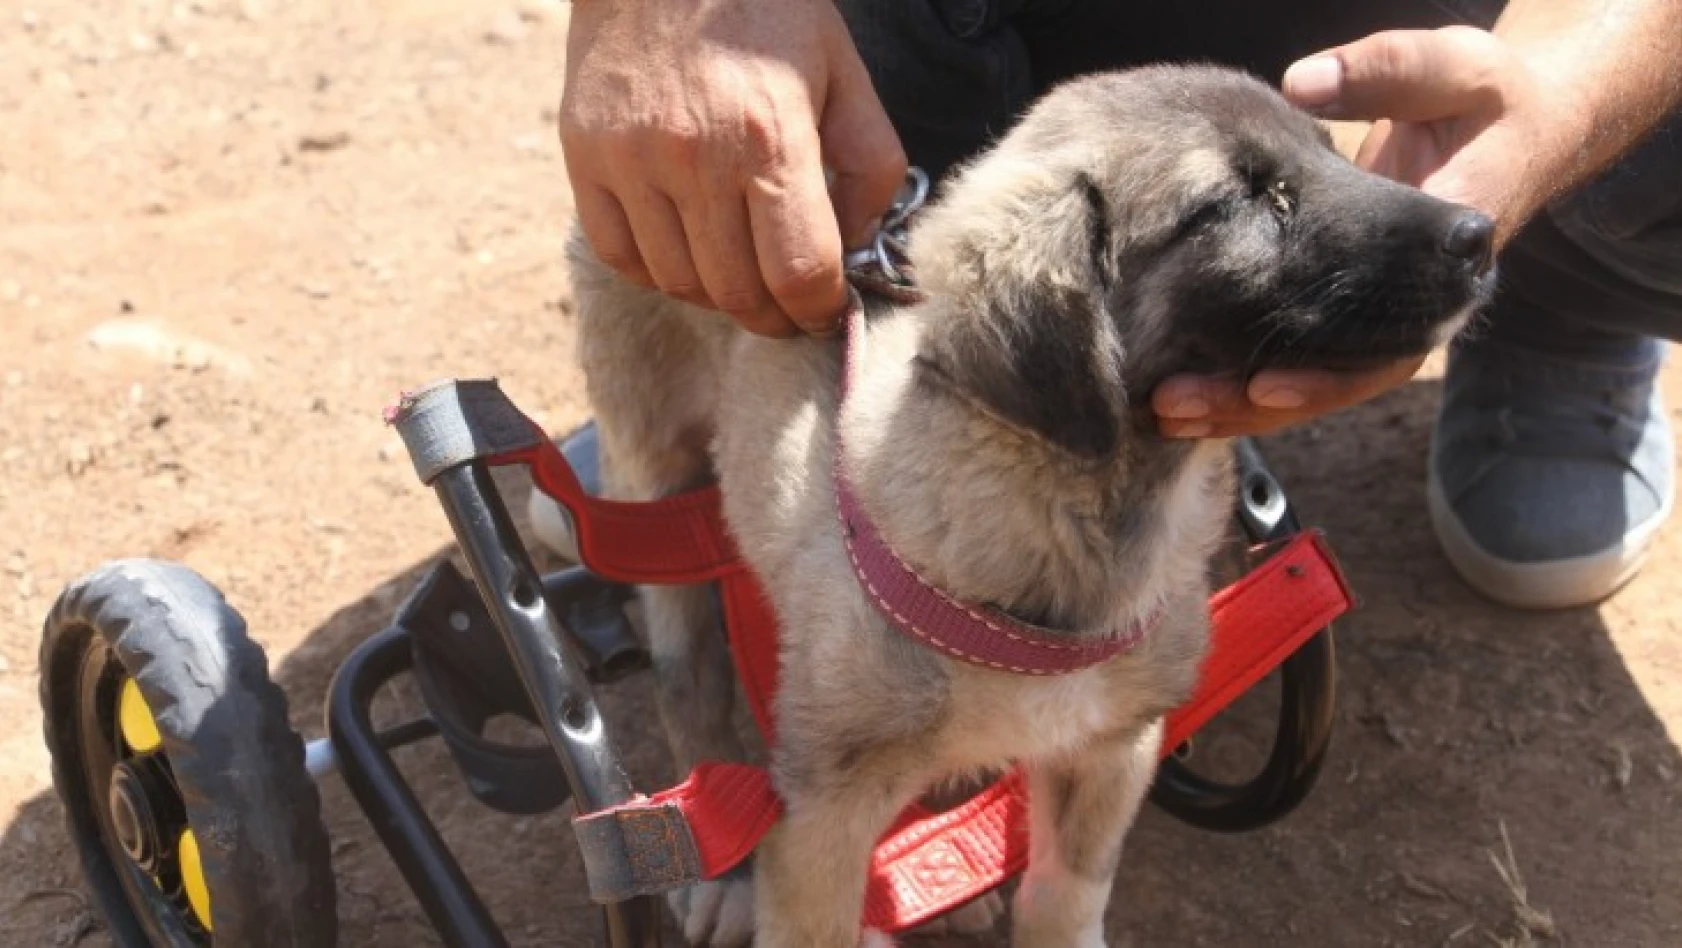 İnsanlık ölmemiş dedirten davranış: Patileri ezilen köpeği yürüteç ile ayağa kaldırdı